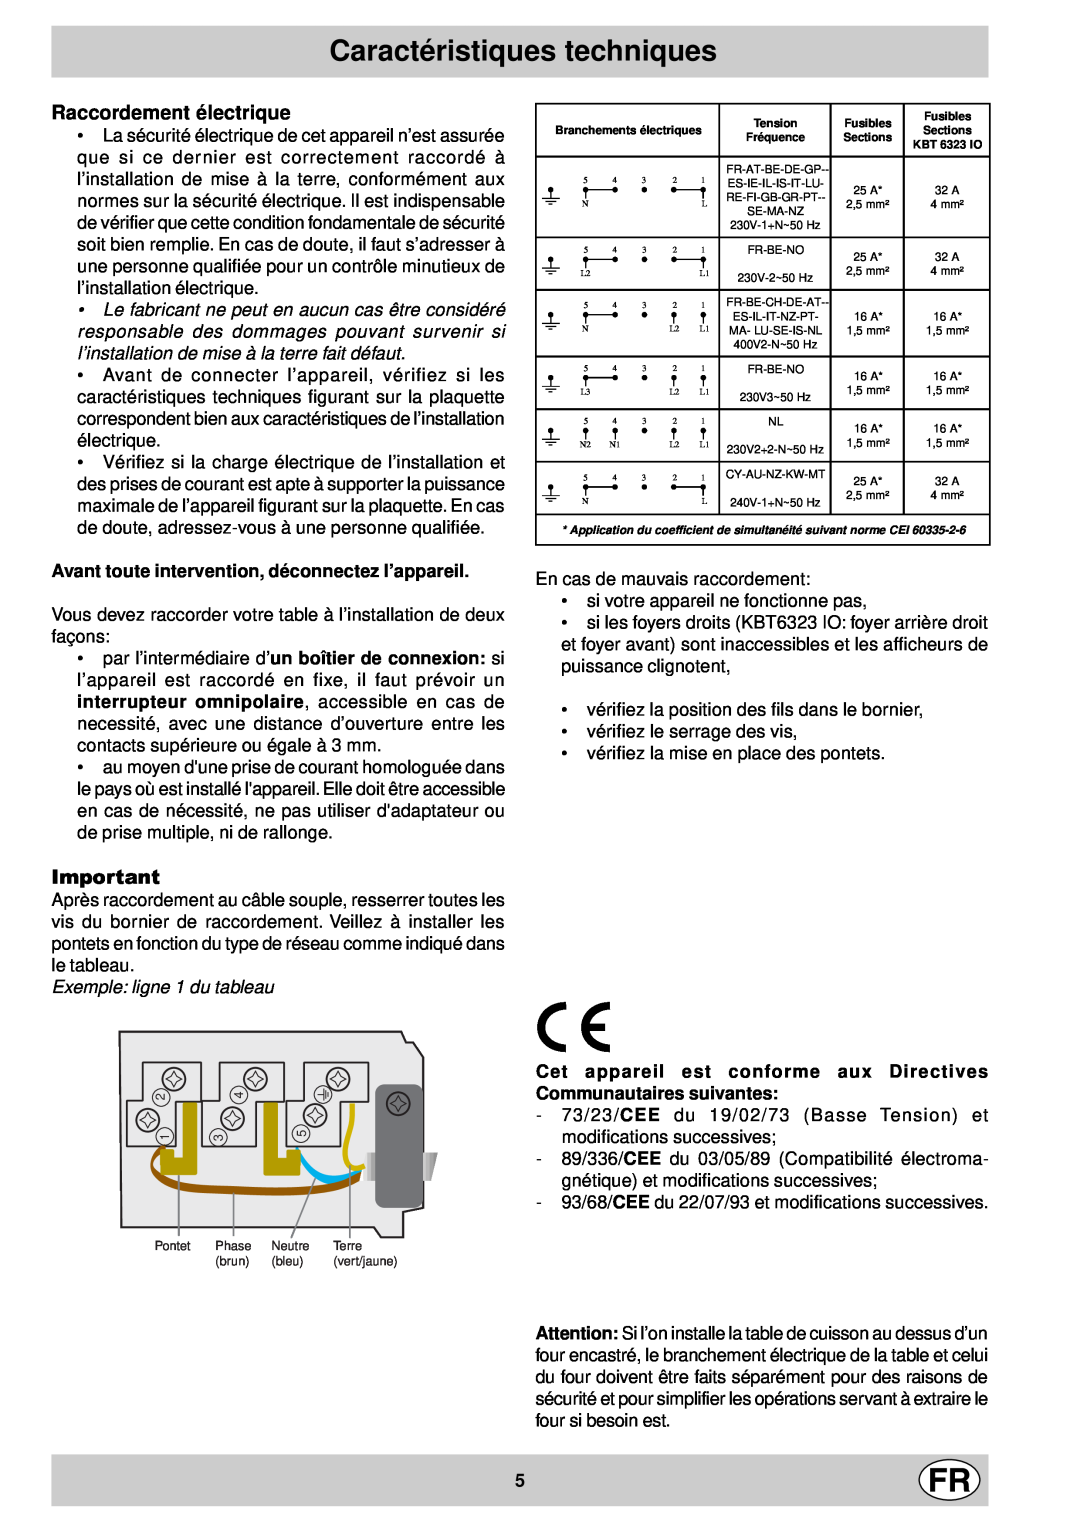 Indesit mk 64 r manual Caractéristiques techniques, Raccordement électrique, Exemple ligne 1 du tableau 